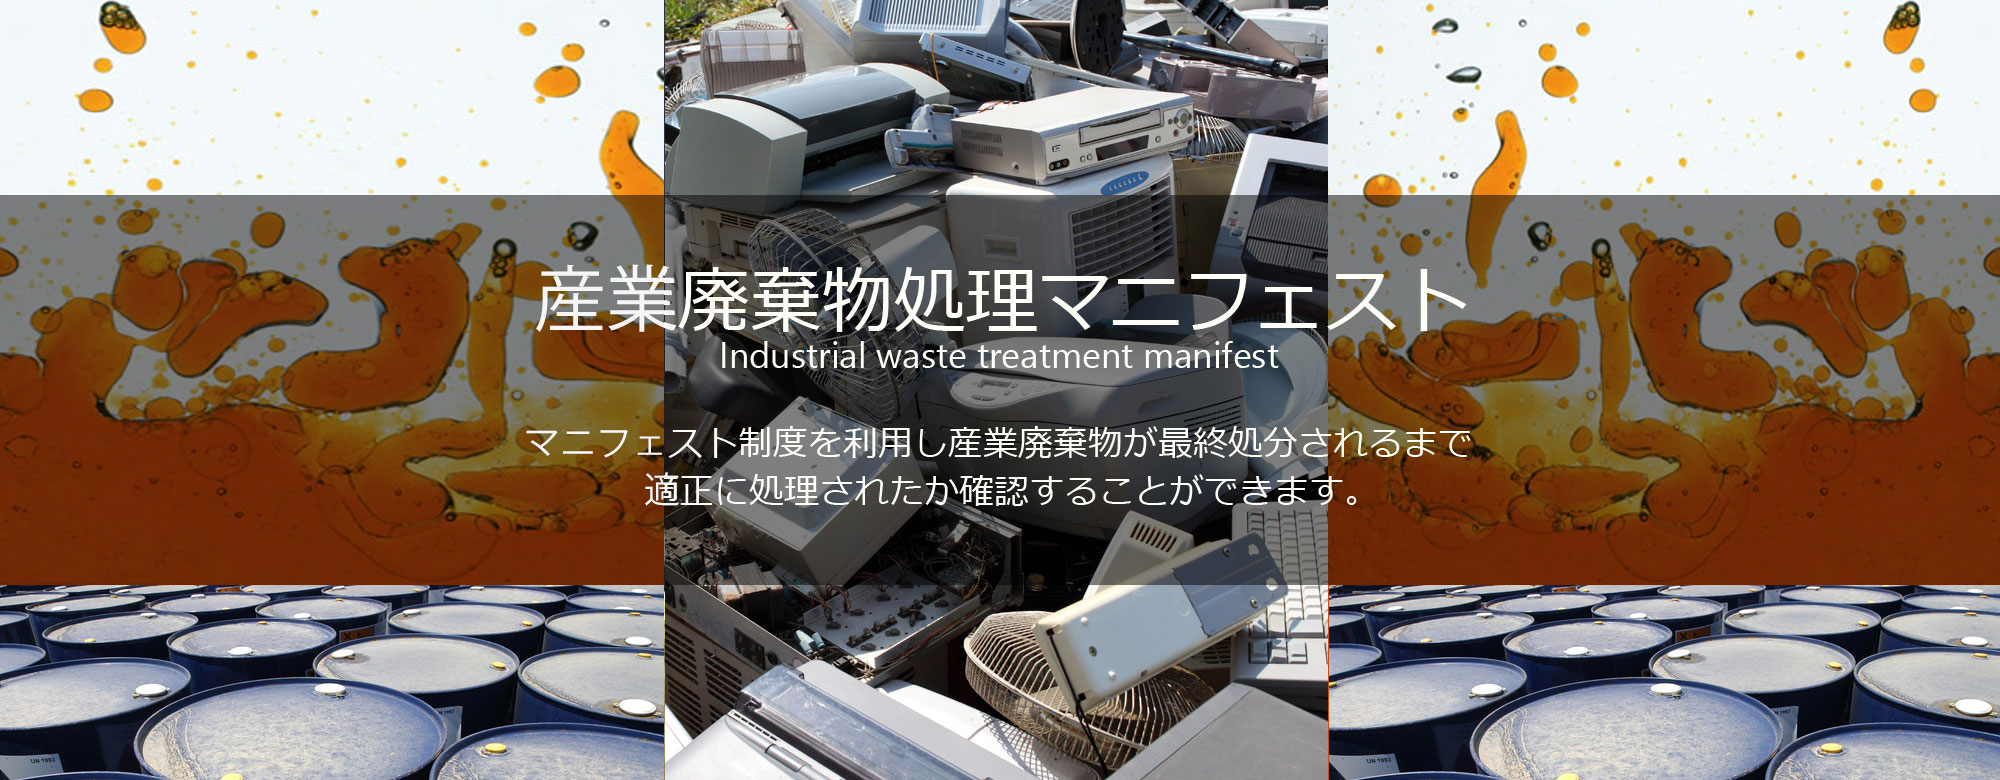 産業廃棄物処理のマニフェスト制度